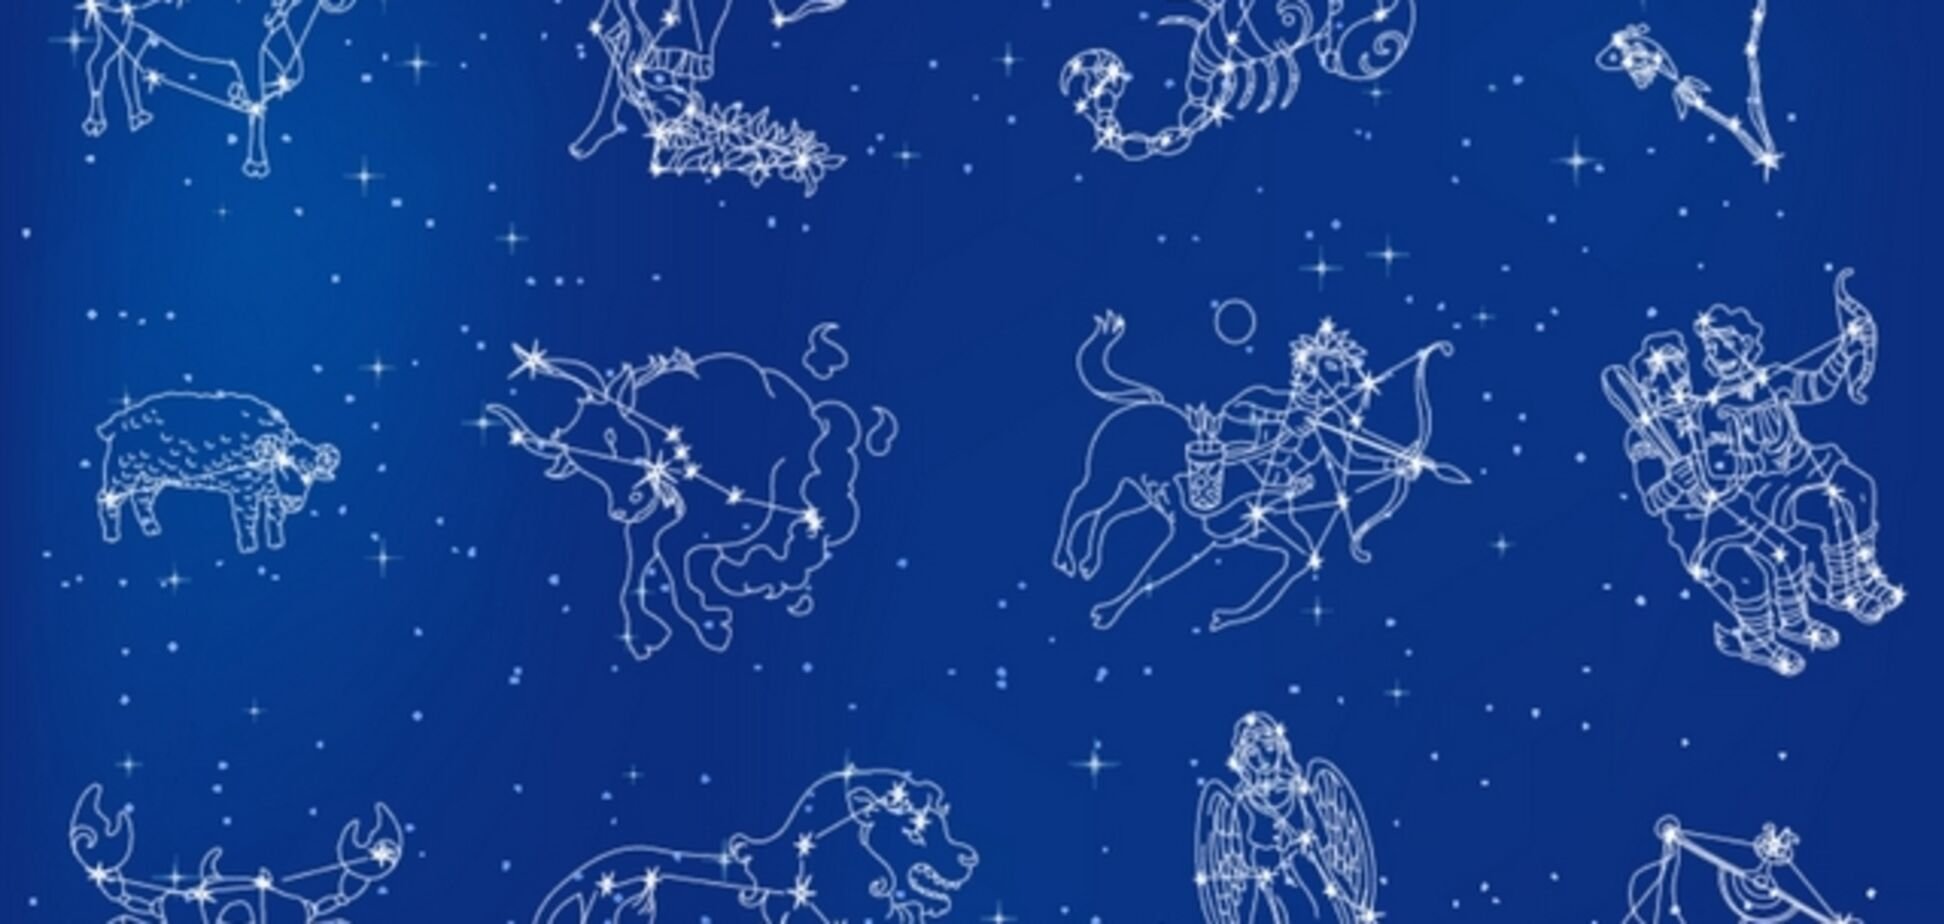 12 zodiacs. Зодиакальные созвездия и знаки зодиака. Созвездия 12 знаков зодиака. Зодиакальные созвездия это созвездия. Созвездие зназнаков зодиака.